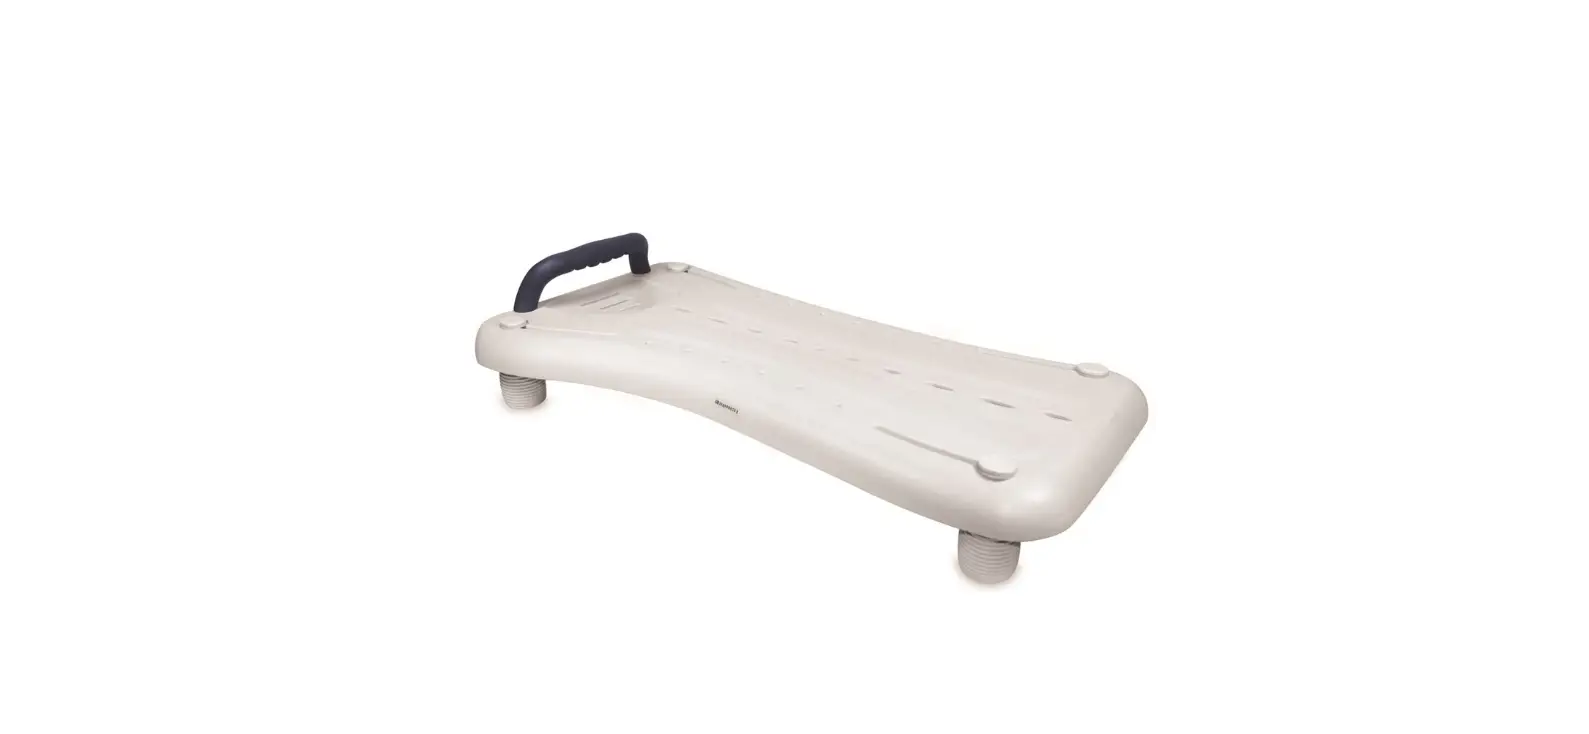 Portable Bath Board Seat